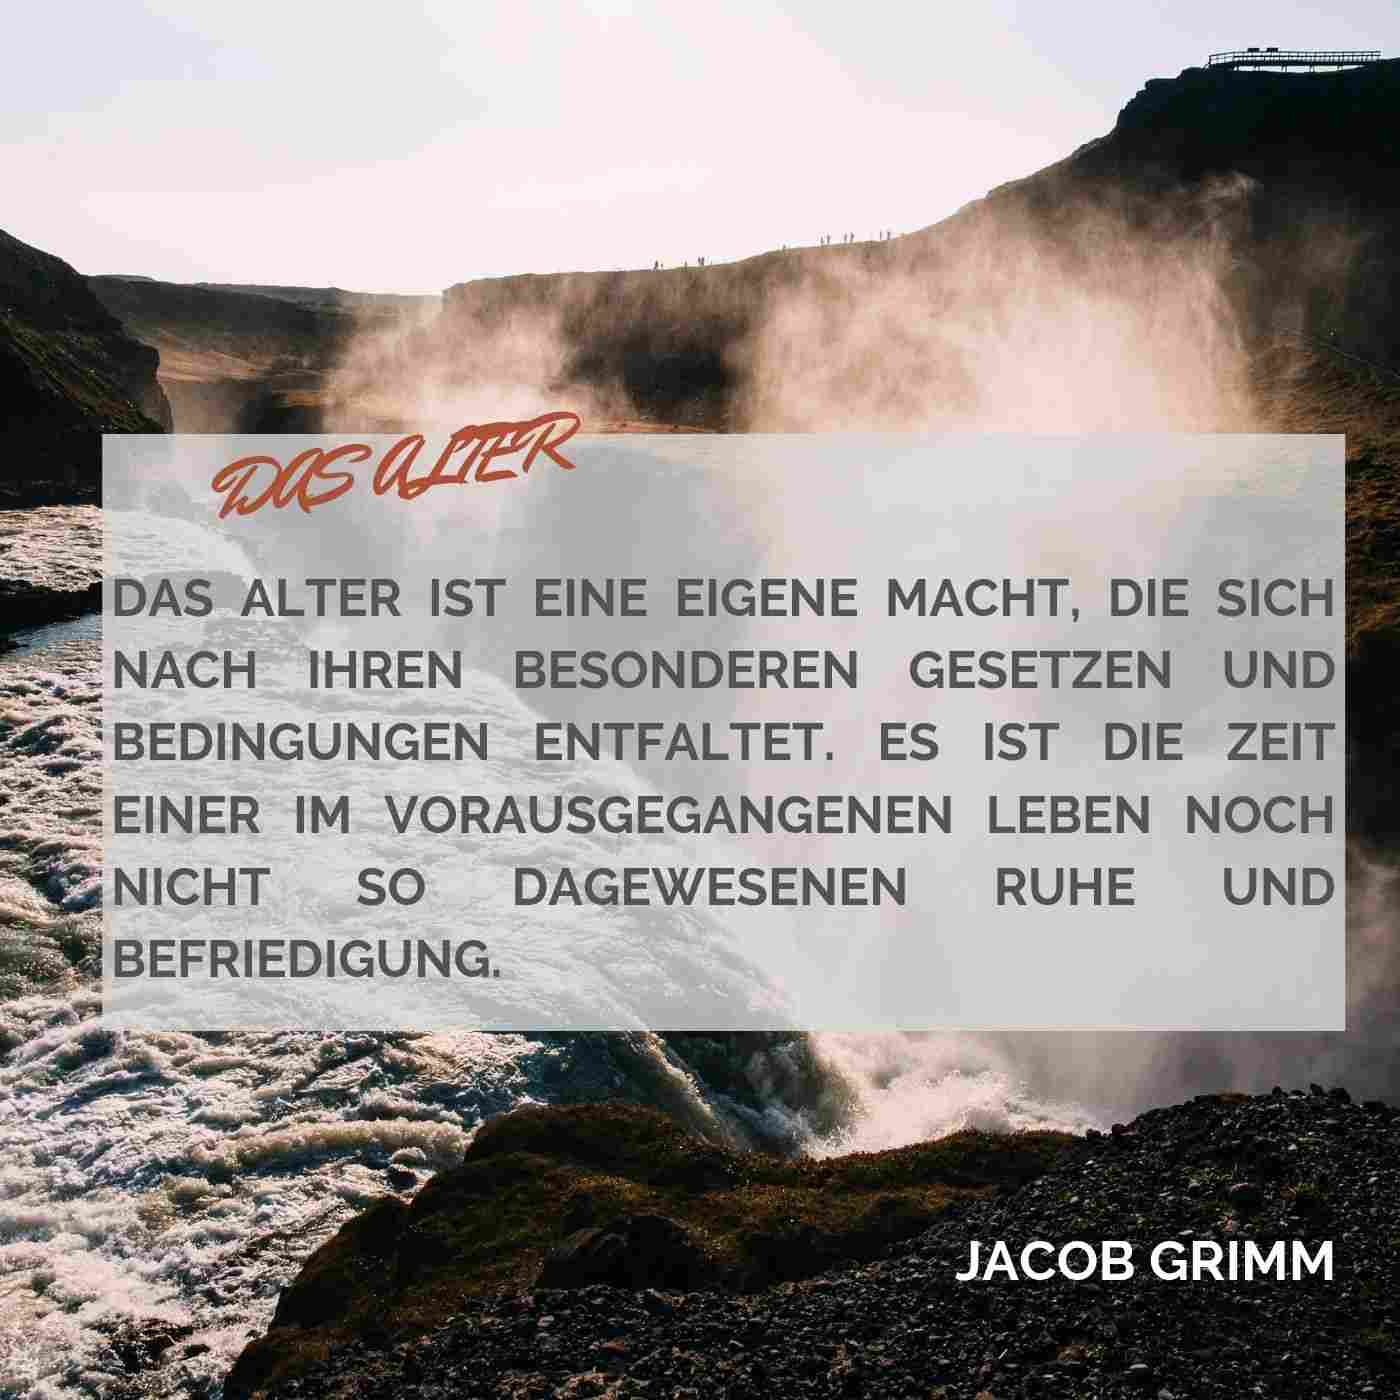 Geburtsagskarte Alter Sprüche Weisheiten Jacob Grimm